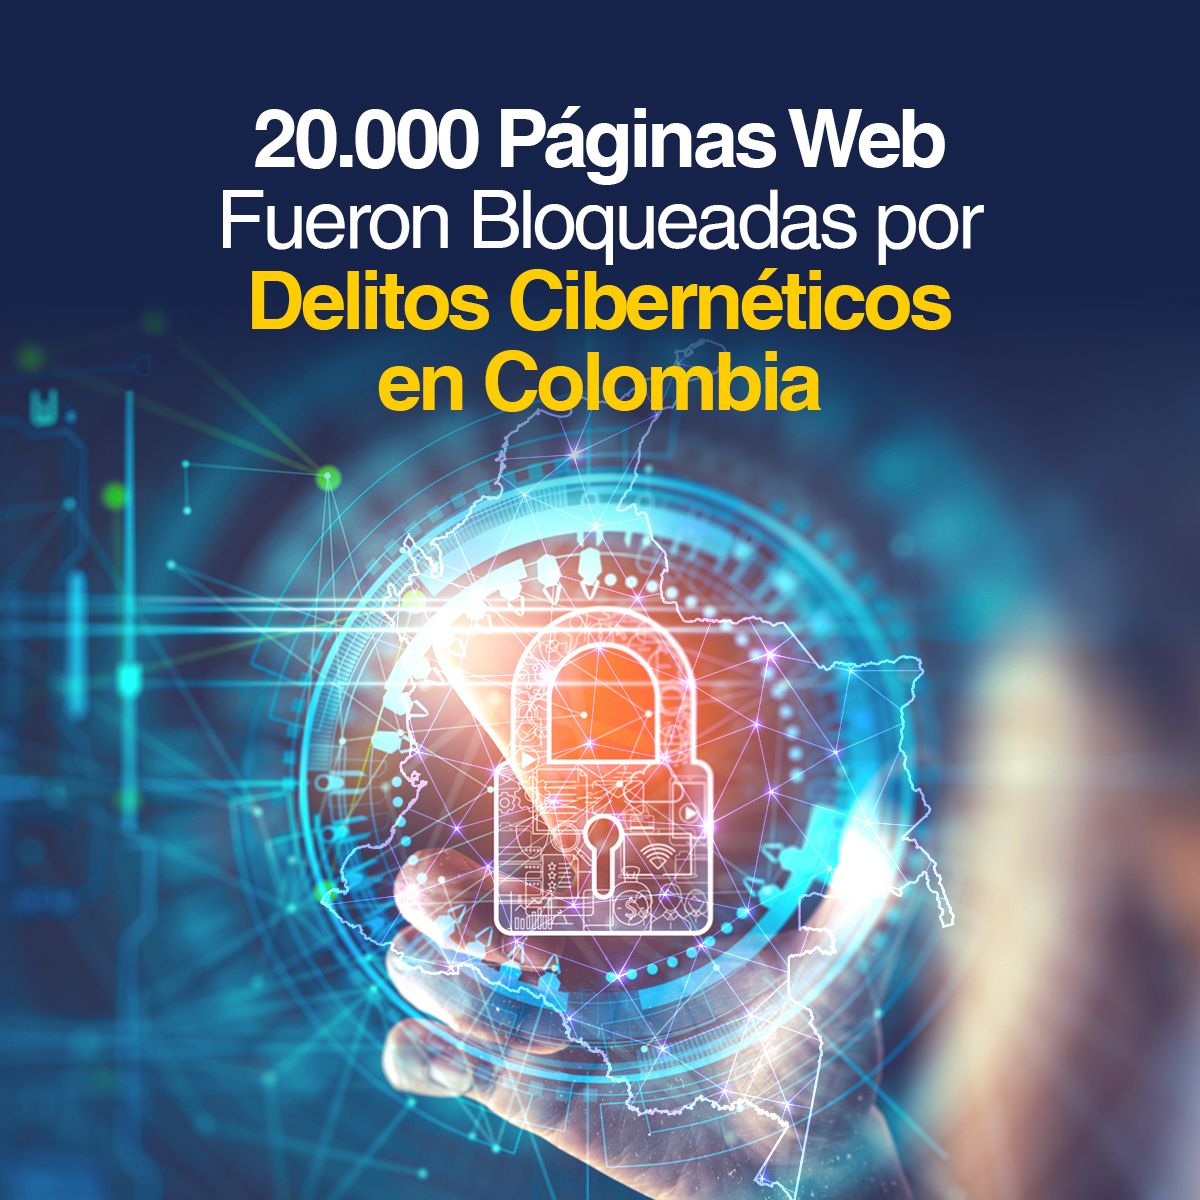 20.000 Páginas Web Fueron Bloqueadas por Delitos Cibernéticos en Colombia